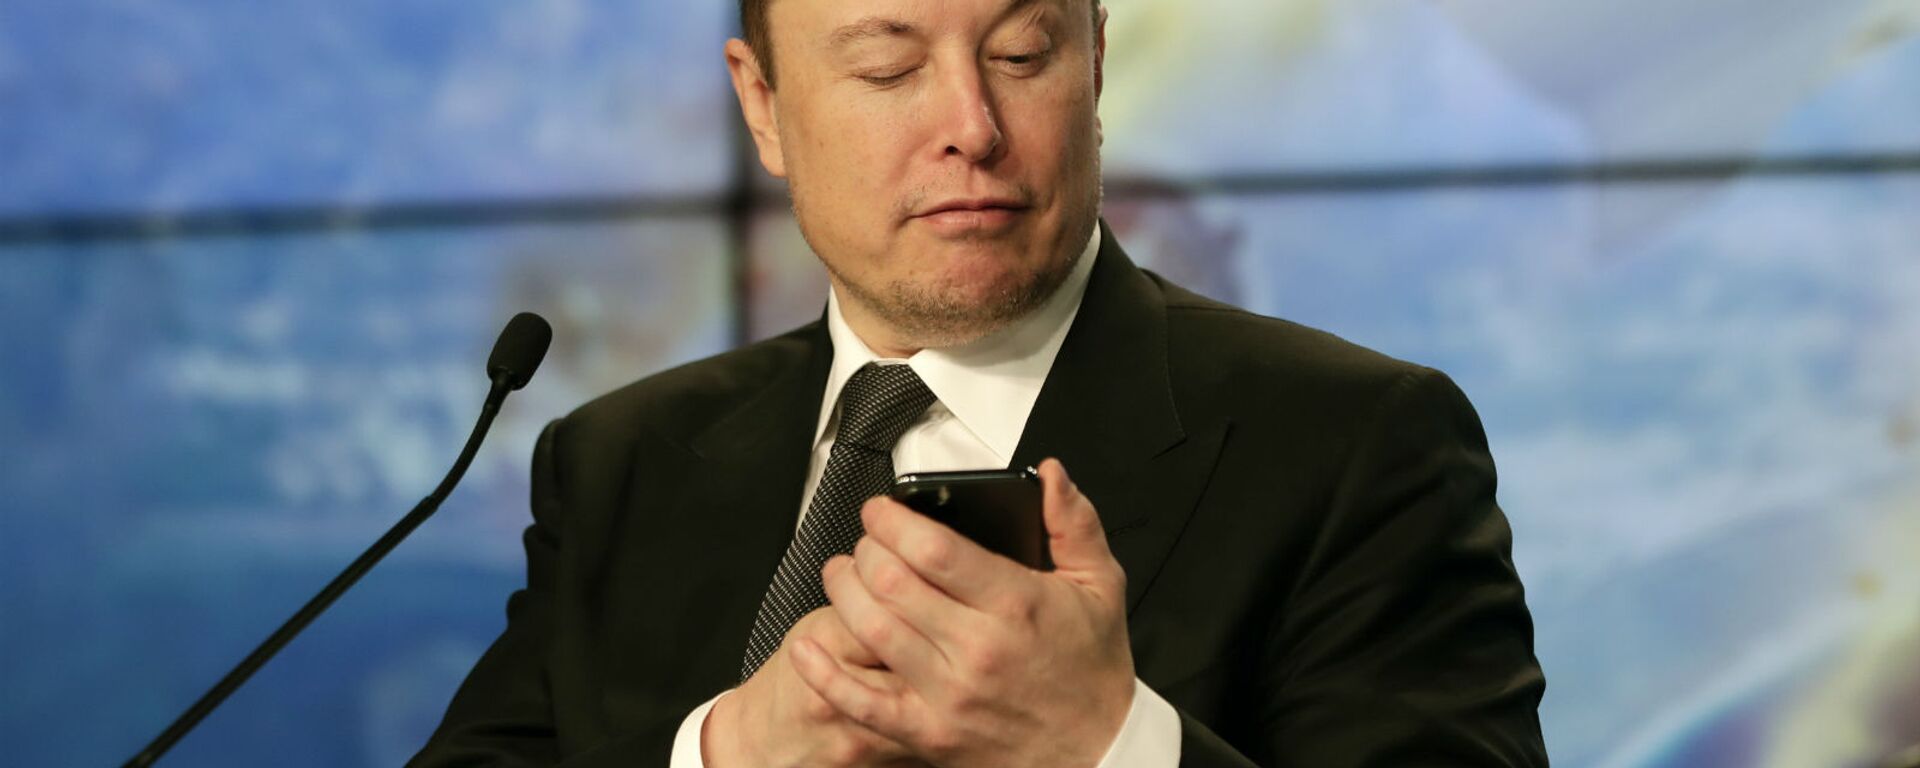 Основатель SpaceX Илон Маск шутит с журналистами, делая вид, что ищет ответ на вопрос по мобильному телефону во время пресс-конференции после испытательного полета ракеты Falcon 9 SpaceX (19 января 2020). Флорида - Sputnik Արմենիա, 1920, 19.02.2021